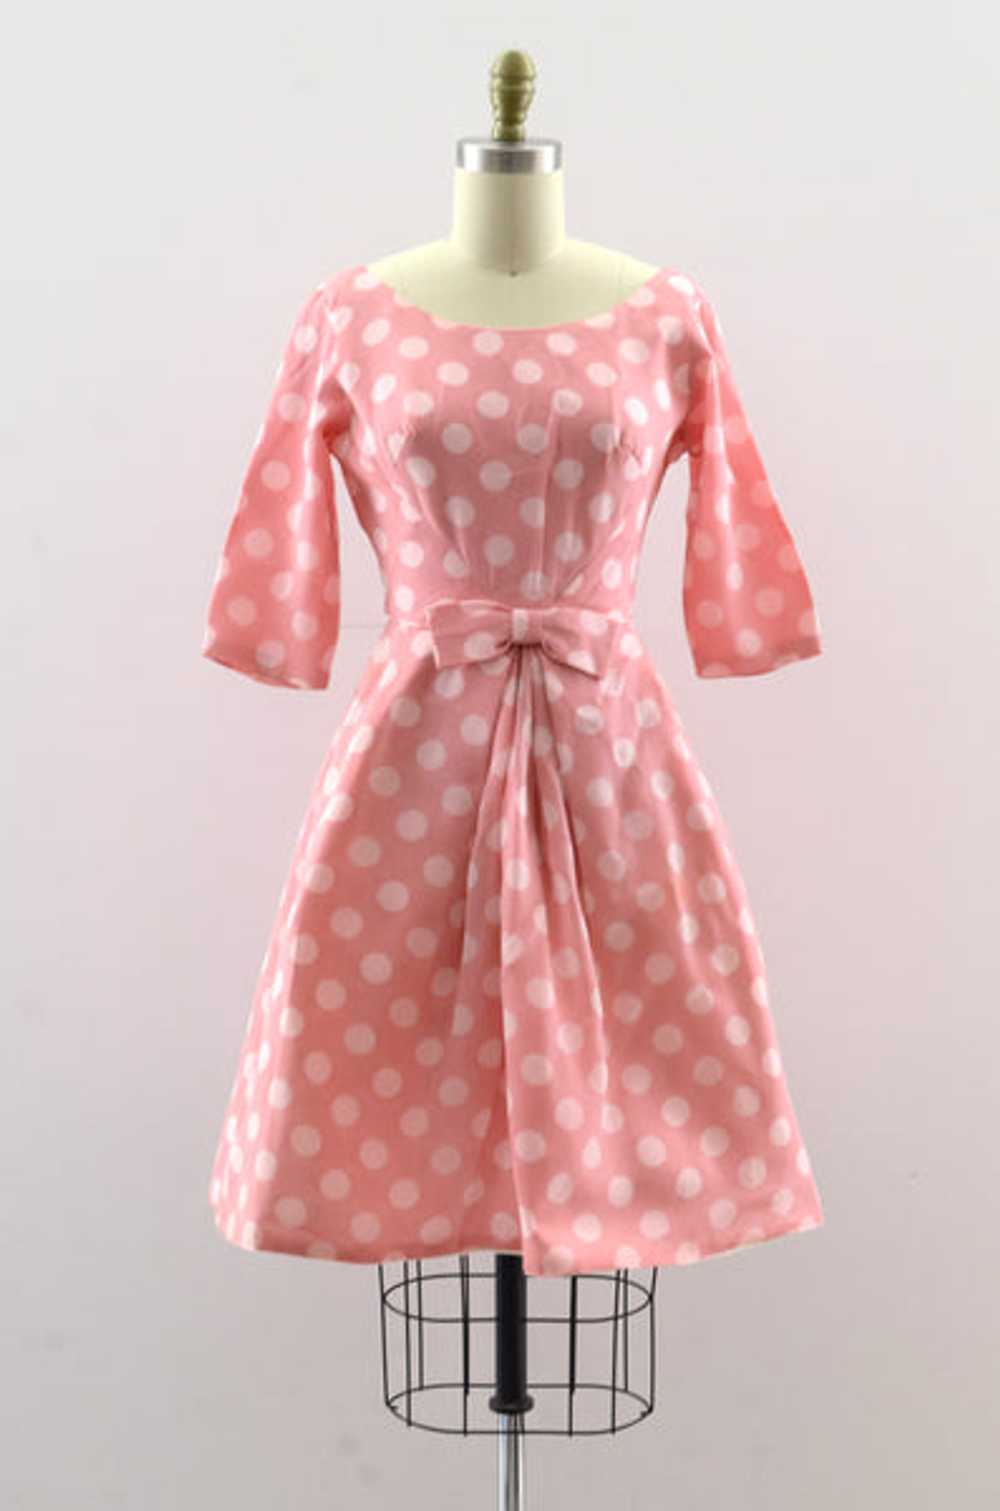 Vintage 50's Pink Polka Dot Dress - image 1